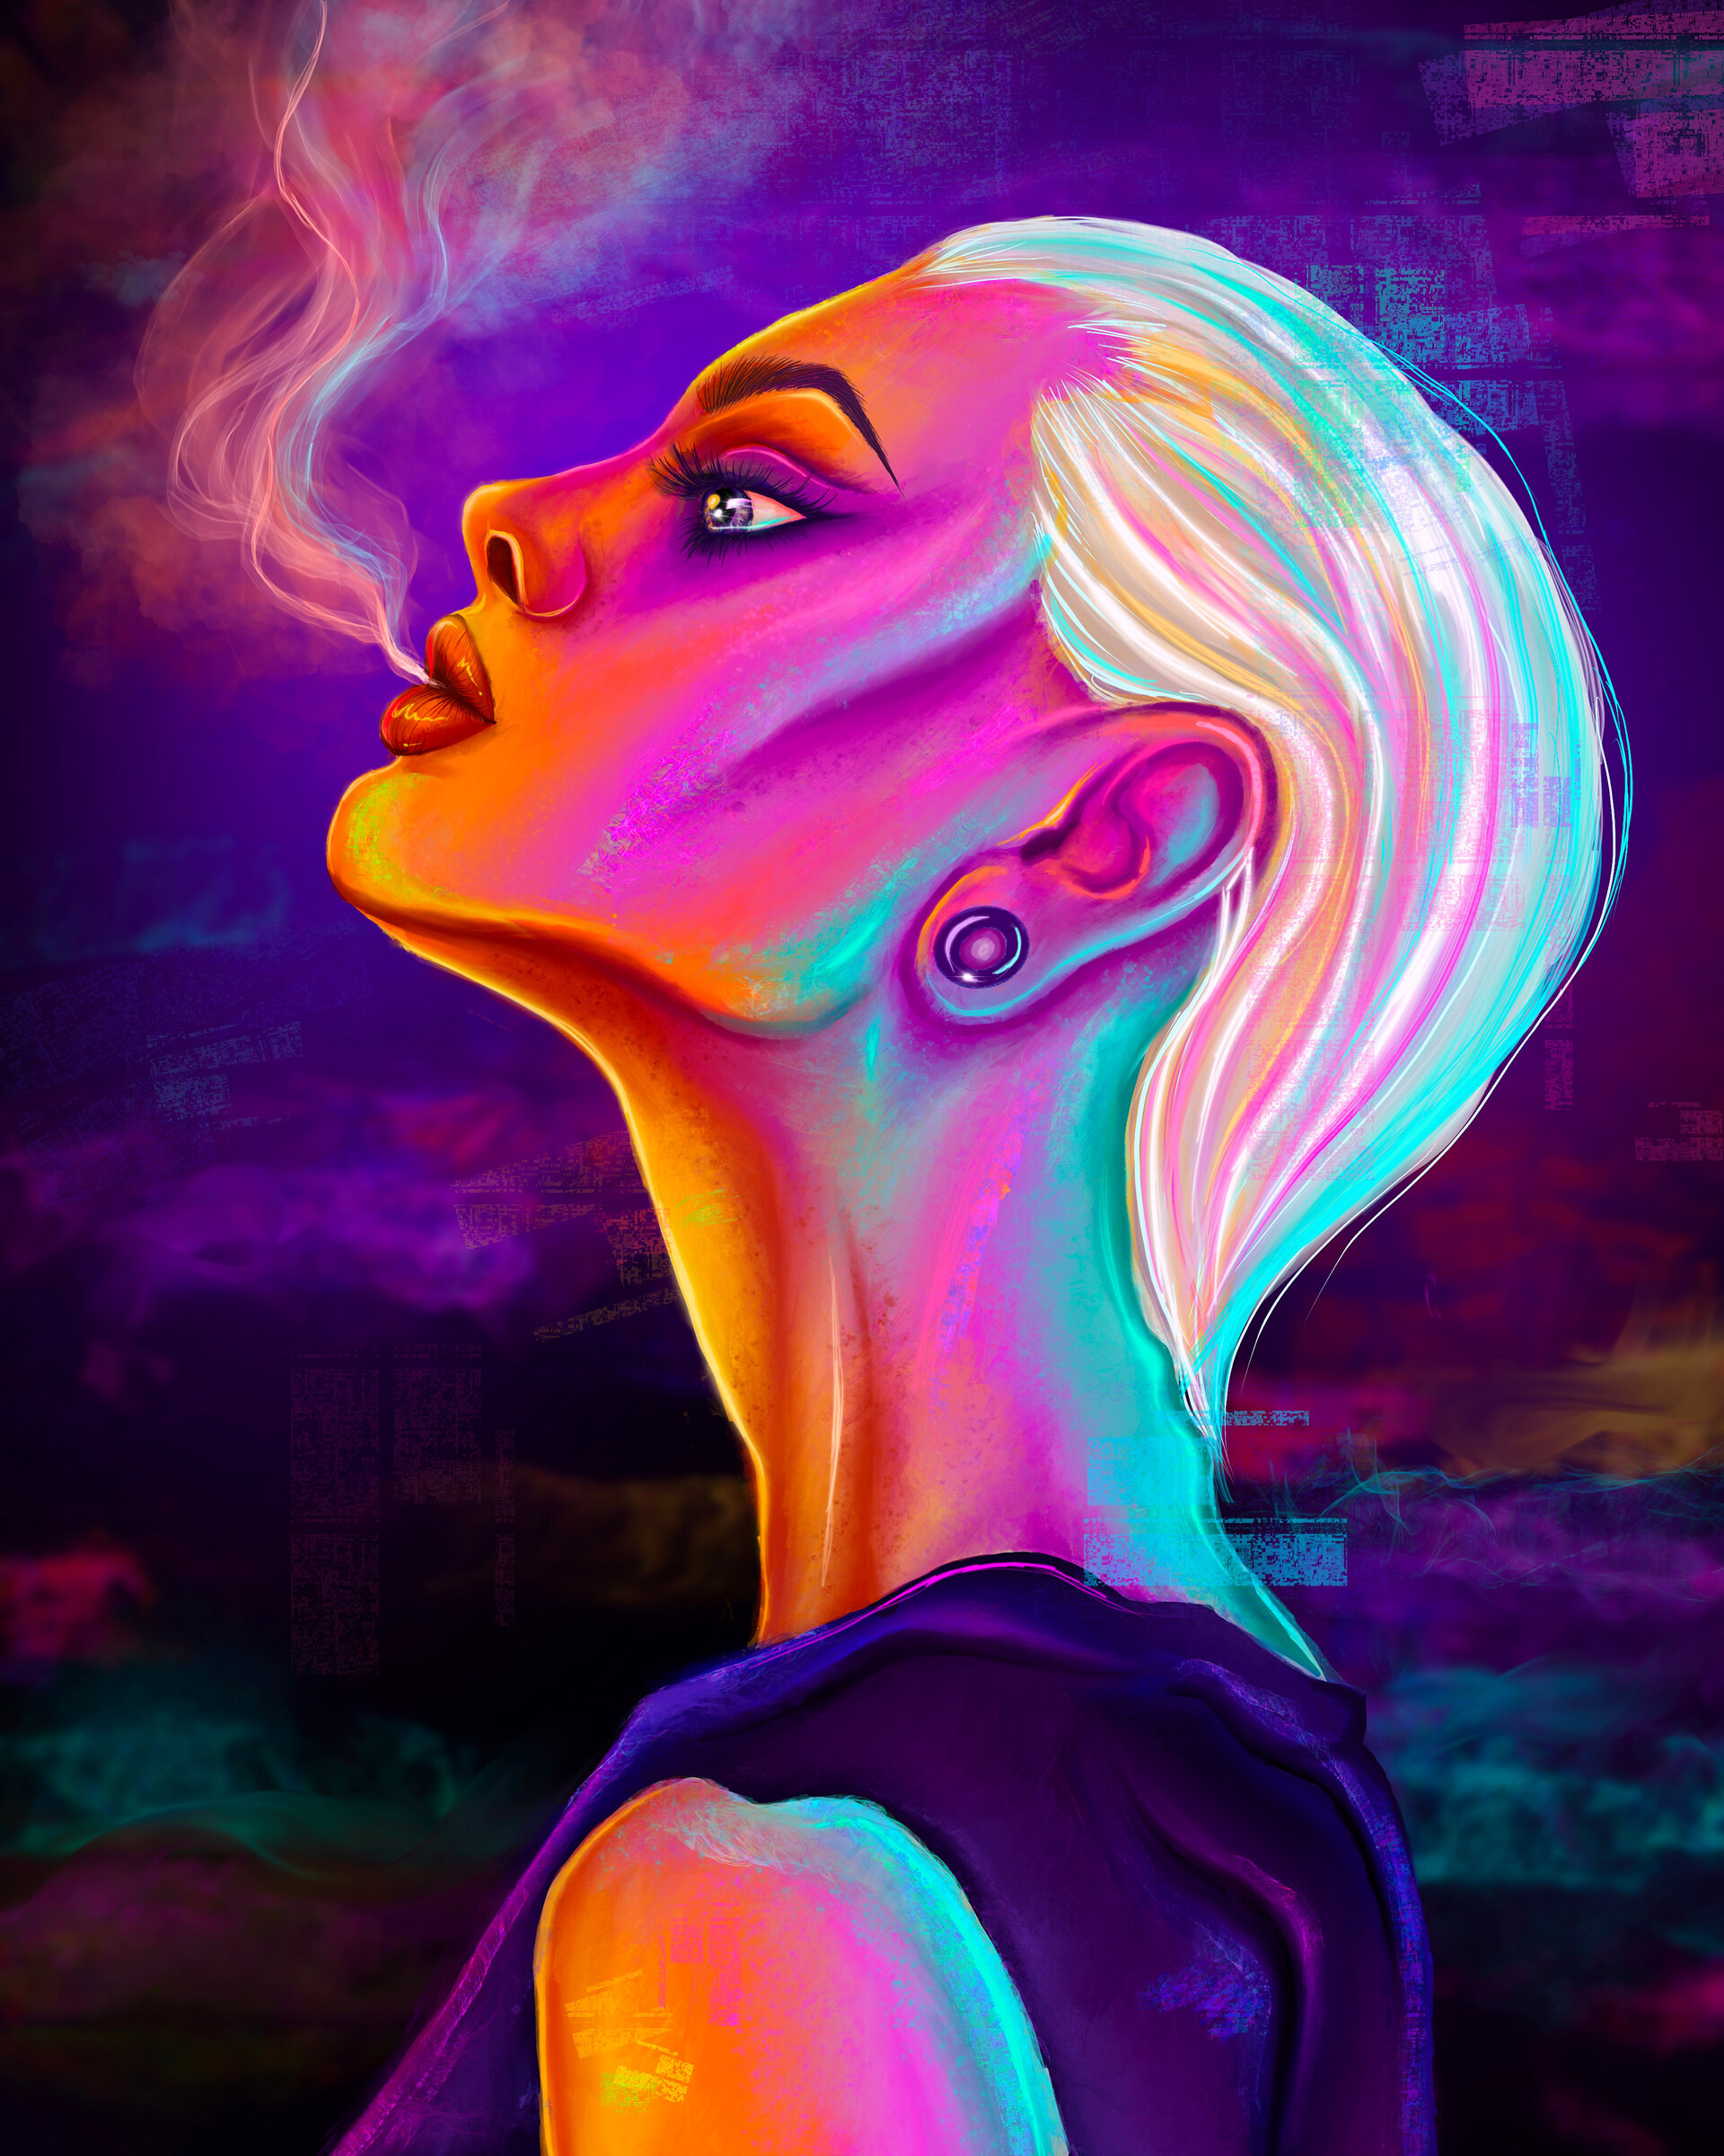 ArtStation - Smoking girl illustration